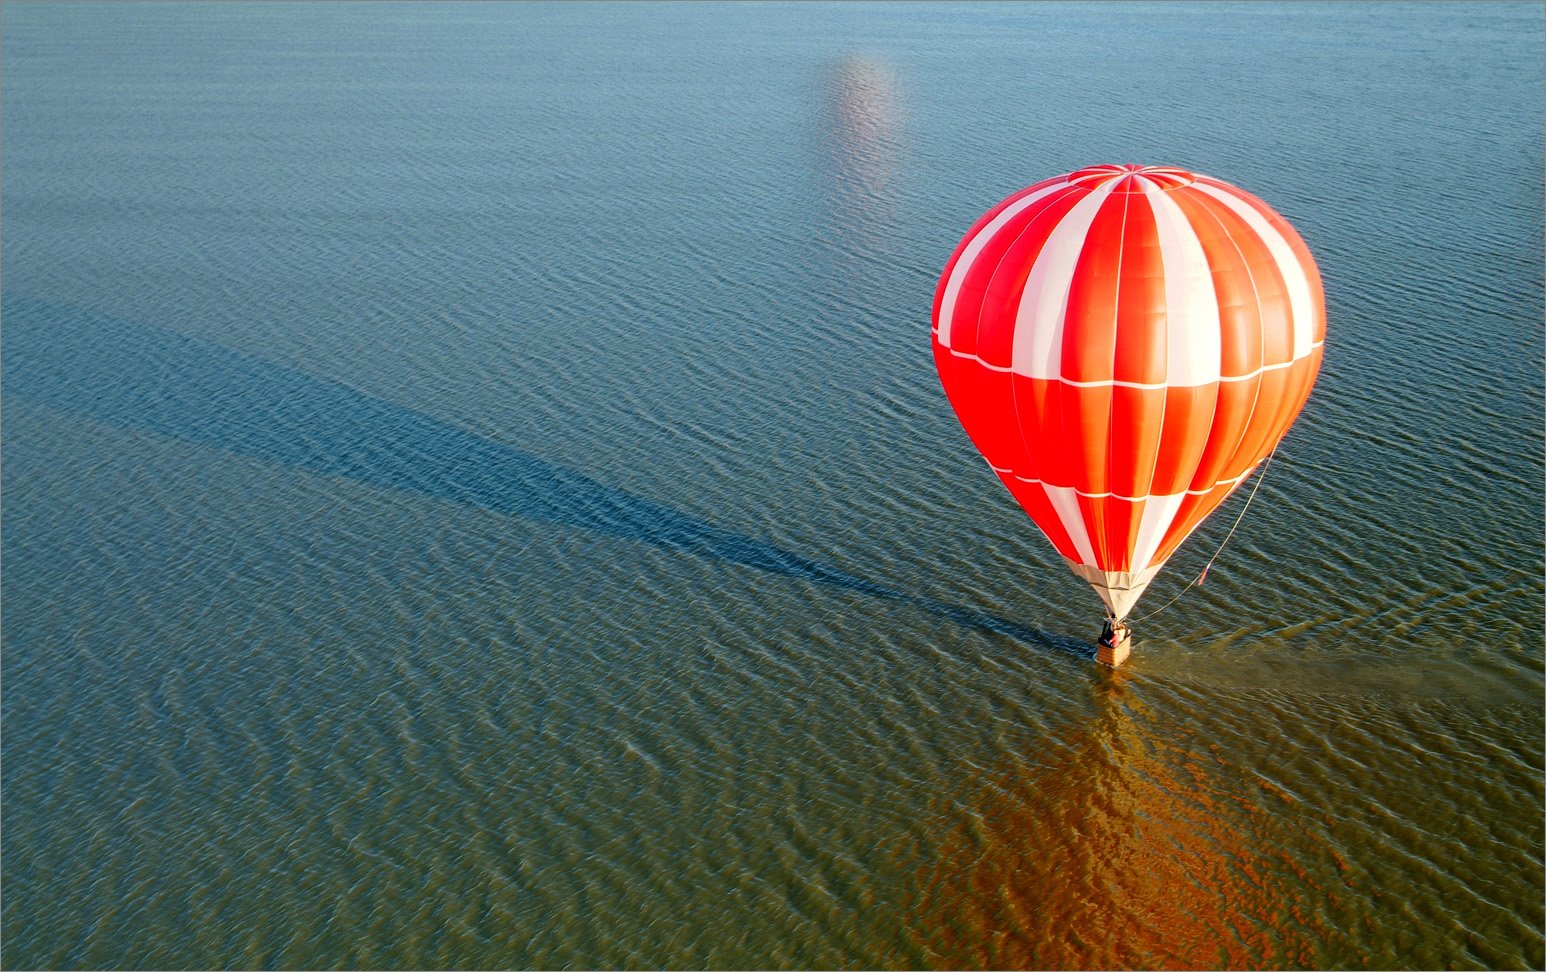 Шар над морем. Воздушные шары над морем. Воздушный шар над морем. Полет на воздушных шарах. Воздушные шары над водой.